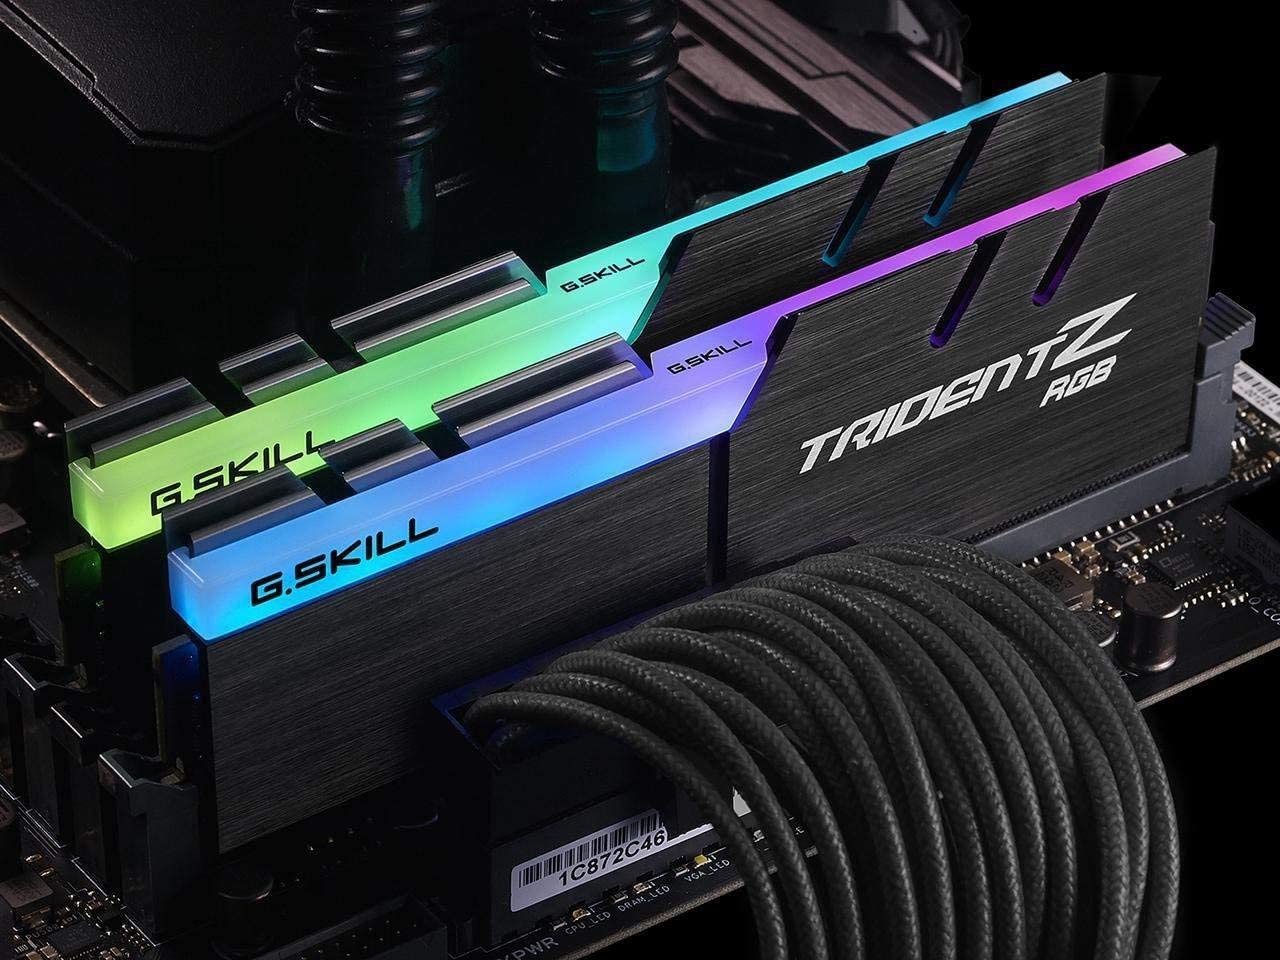 رم دسکتاپ برند جی اسکیل مدل  RAM GSKILL TIDENT Z RGB 32G DUAL 3200 16* 2 RGB